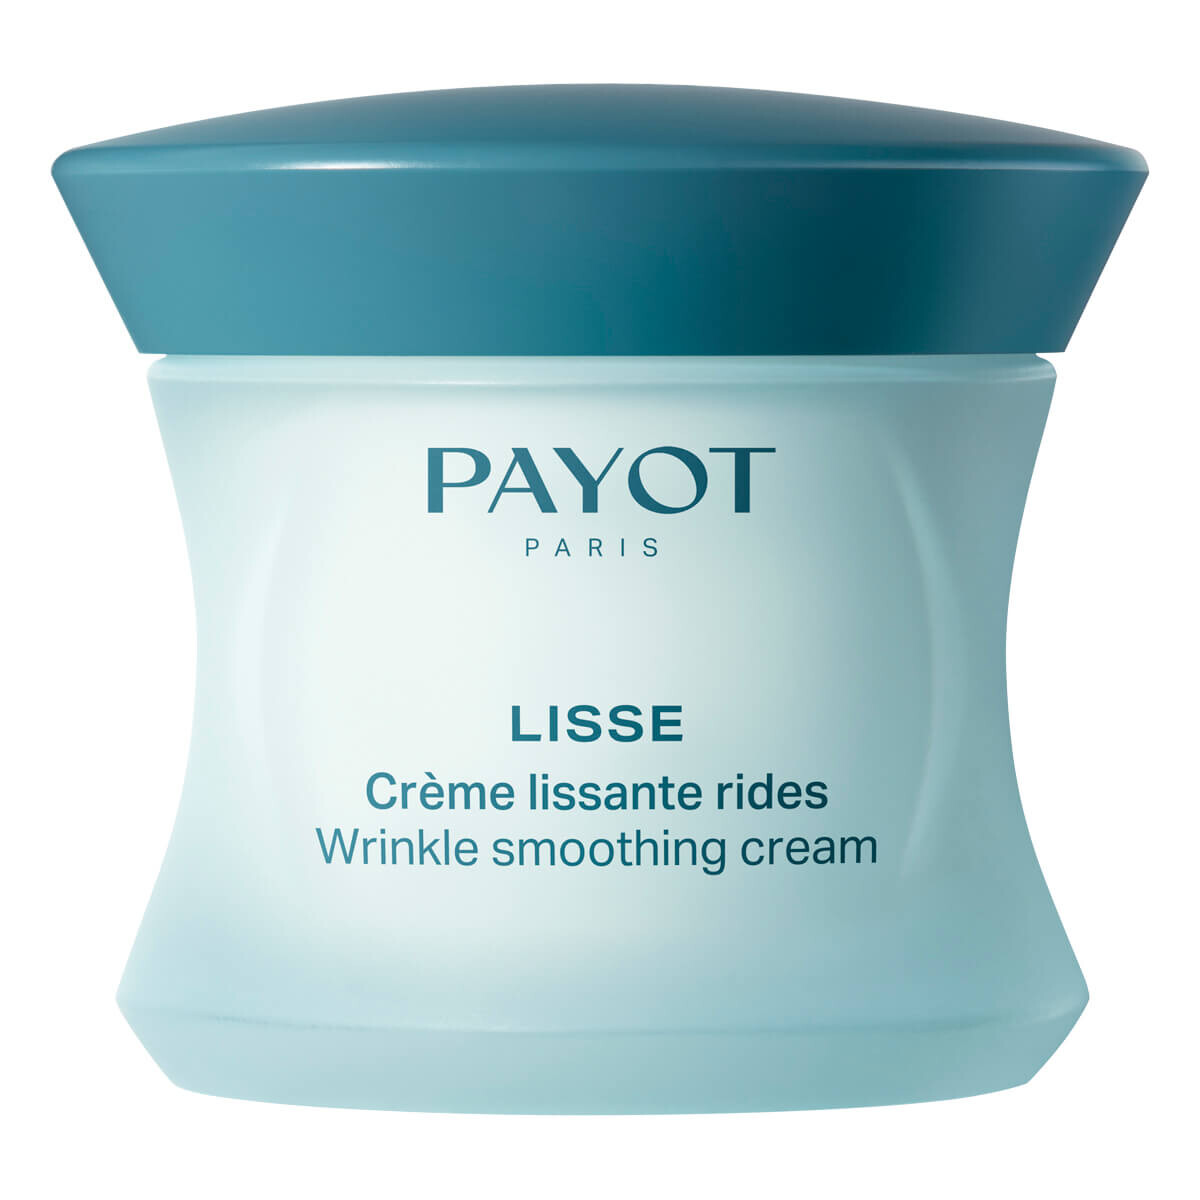 Billede af Payot Wrinkle Smoothing Cream, Lisse, 50 ml.